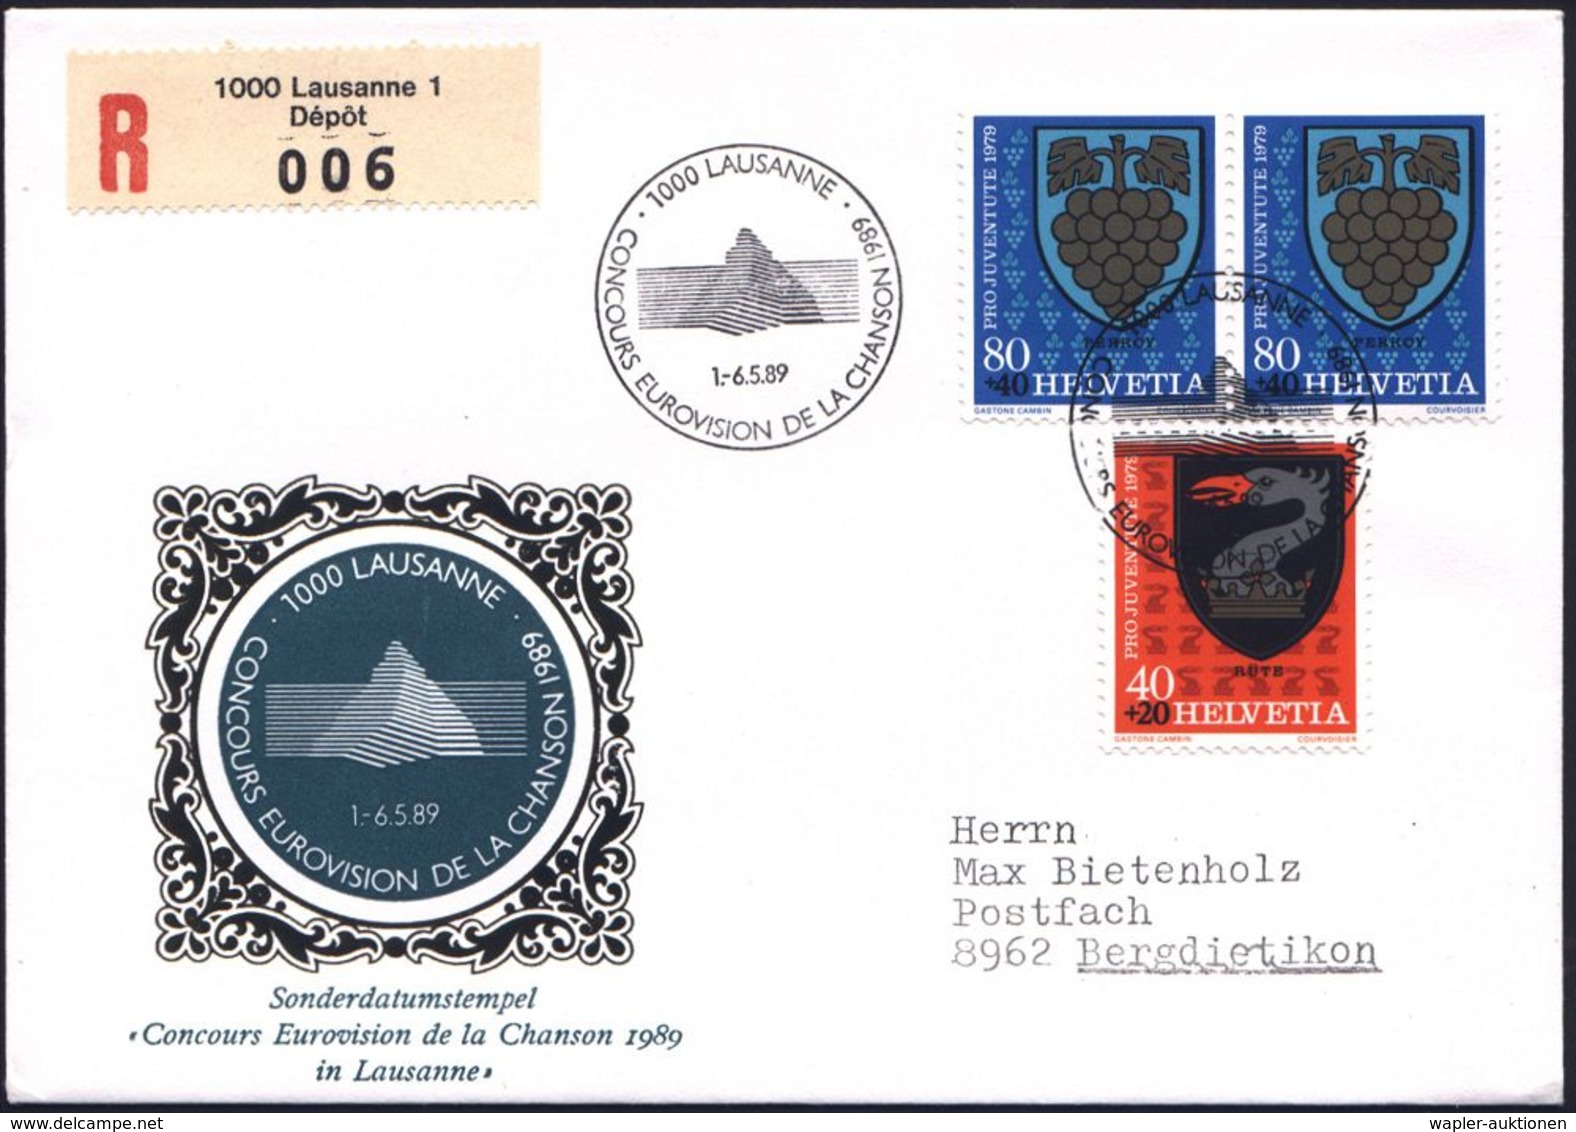 SCHWEIZ 1989 (Mai) SSt.: 1000 LAUSANNE/CONCOURS EUROVISION DE LA CHANCON (Akustik-Logo) + RZ: 1000 Lausanne 1/Dép&ocirc; - Musique